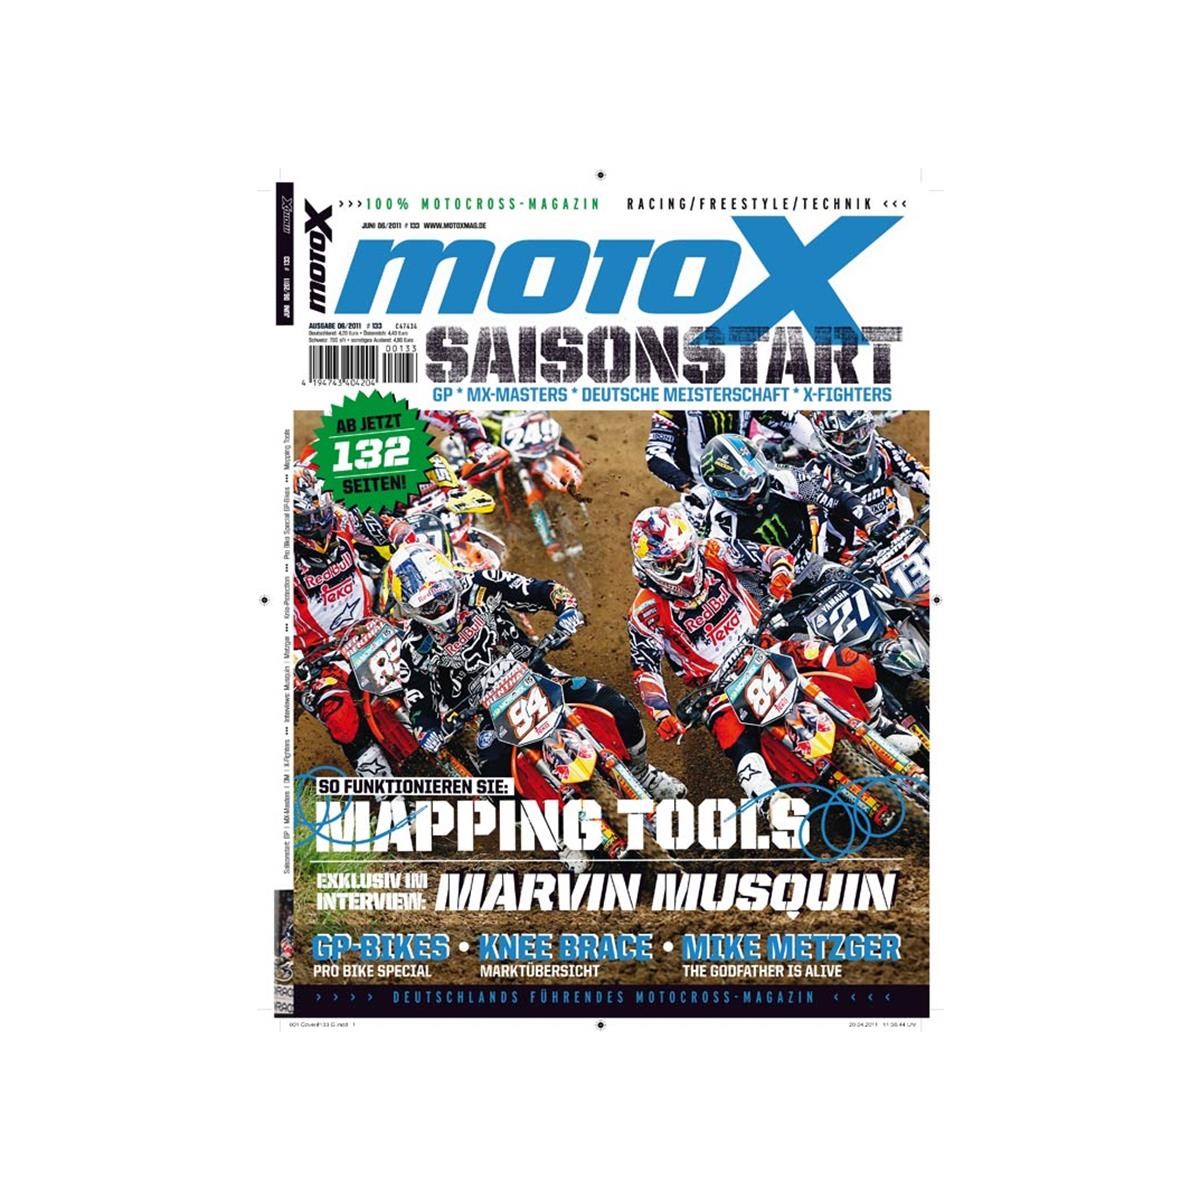 Lebensmittel/Fanartikel/Medien-Zeitschriften/Magazine/Kalender - Magazin MotoX Ausgabe 06/2011